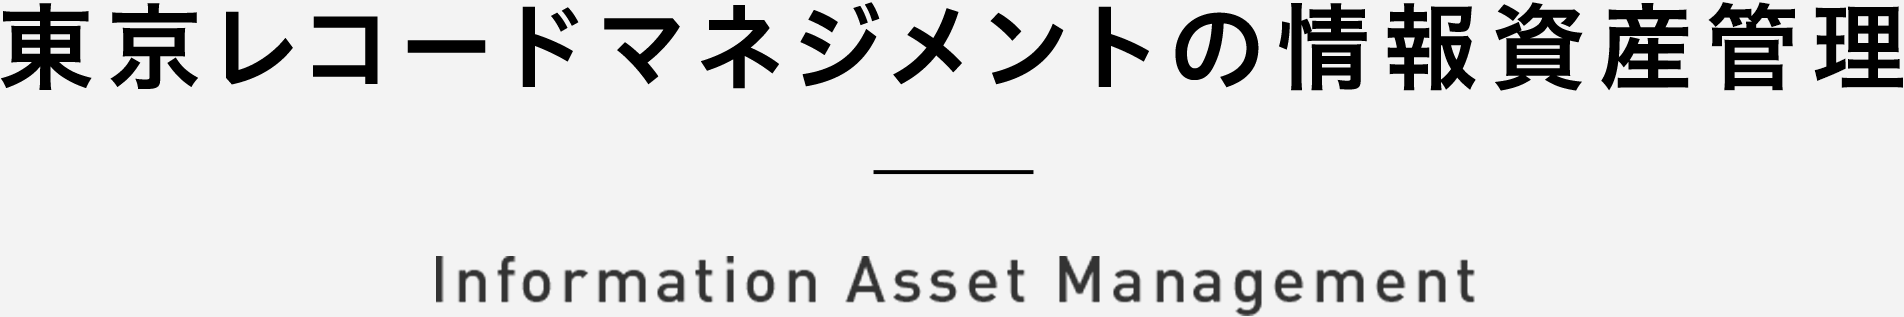 東京レコードマネジメントの情報資産管理 Asset Manegement Information